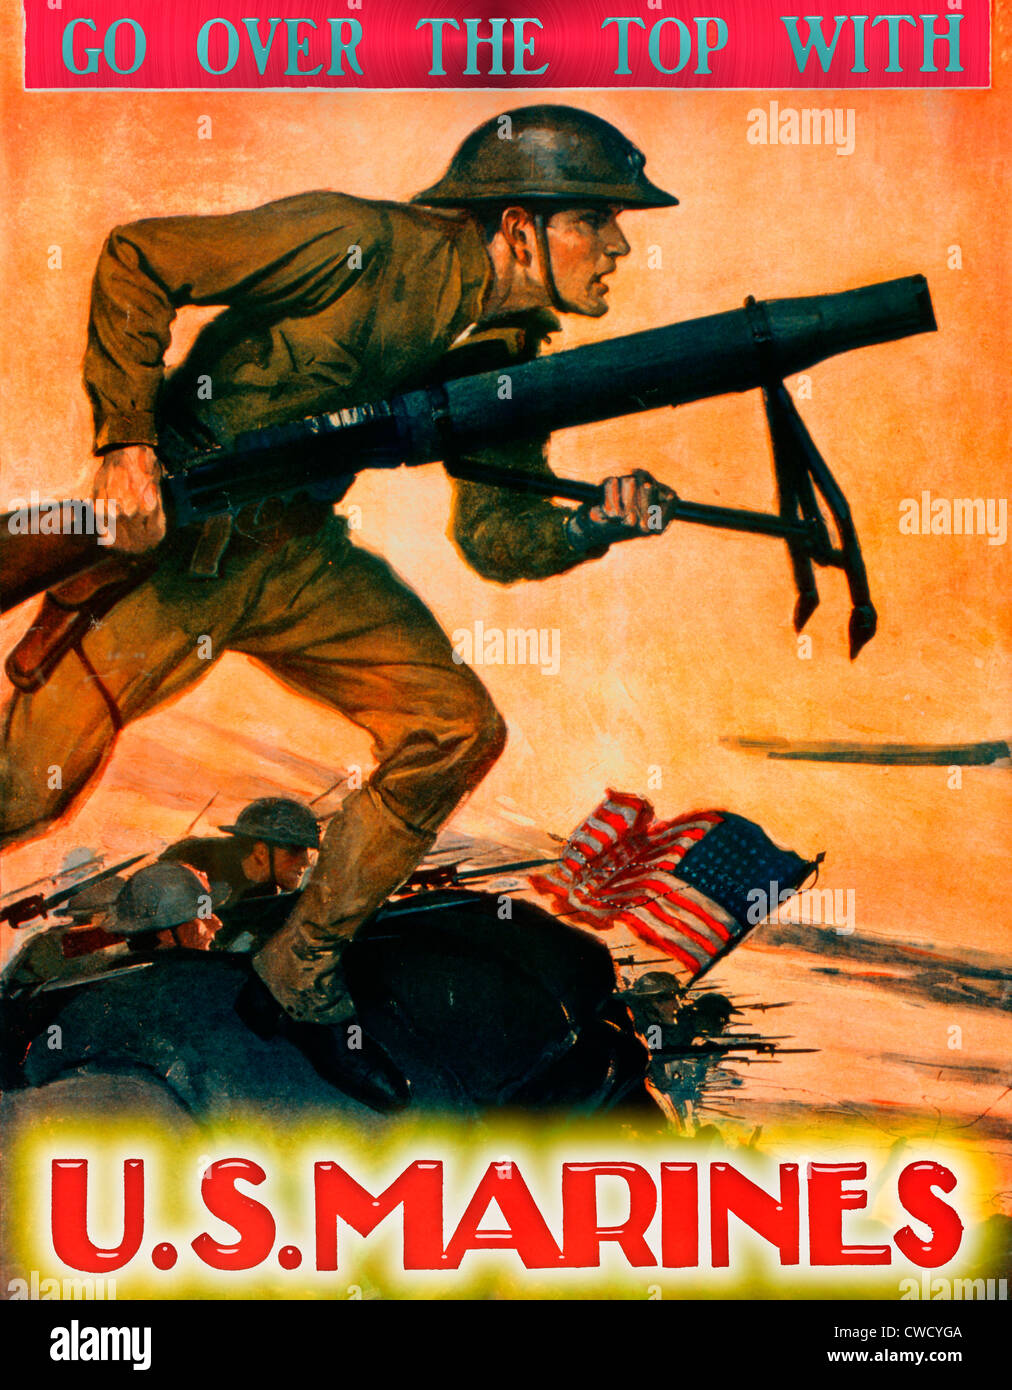 Rendez-vous sur le haut avec des marines américains - LA PREMIÈRE GUERRE MONDIALE USA Poster avec plus de lettres modernes Banque D'Images